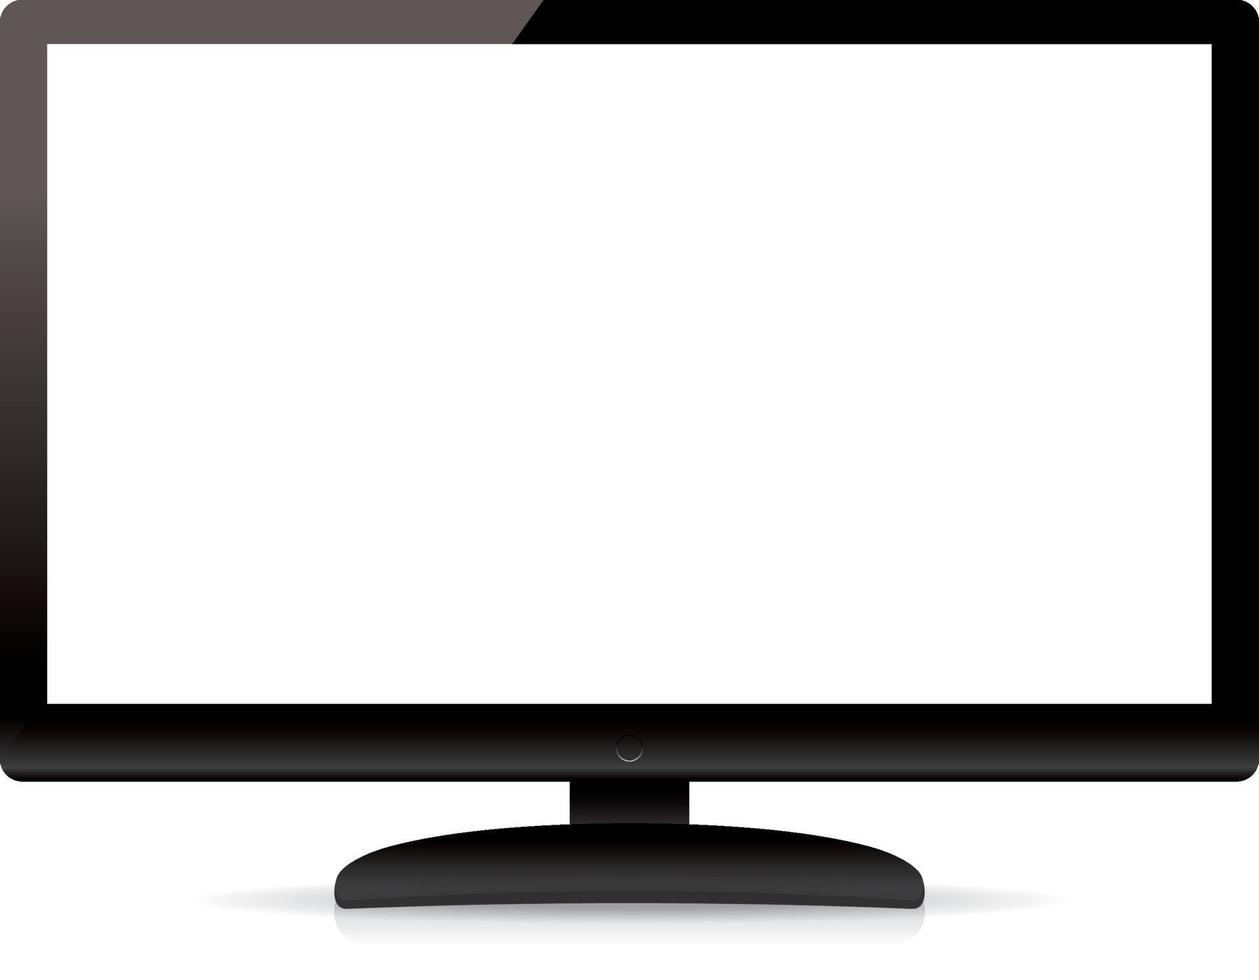 moderne lege flatscreen-tv geïsoleerd op een witte achtergrond vector